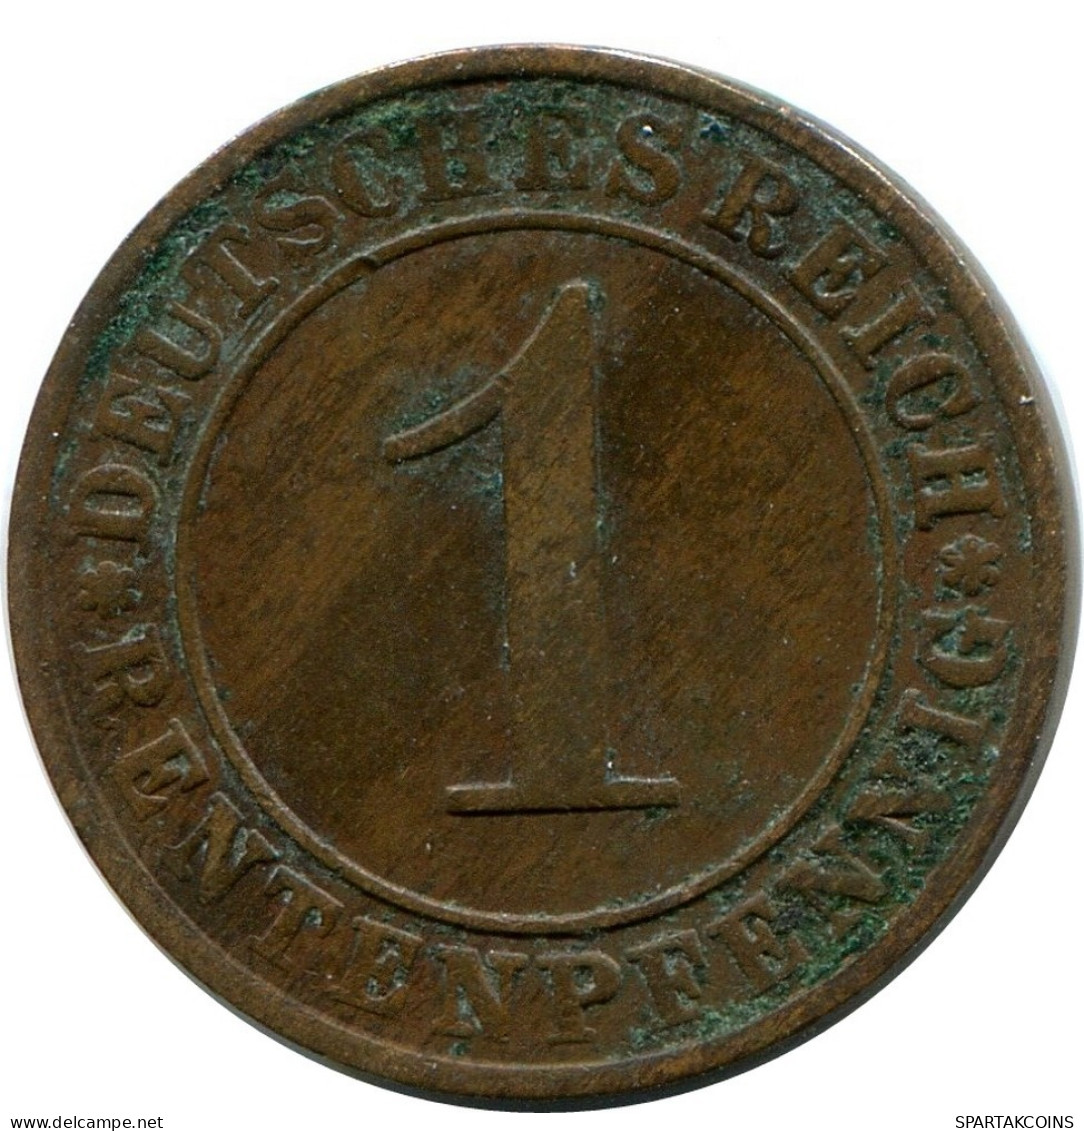 1 RENTENPFENNIG 1923 A ALEMANIA Moneda GERMANY #DB769.E.A - 1 Rentenpfennig & 1 Reichspfennig